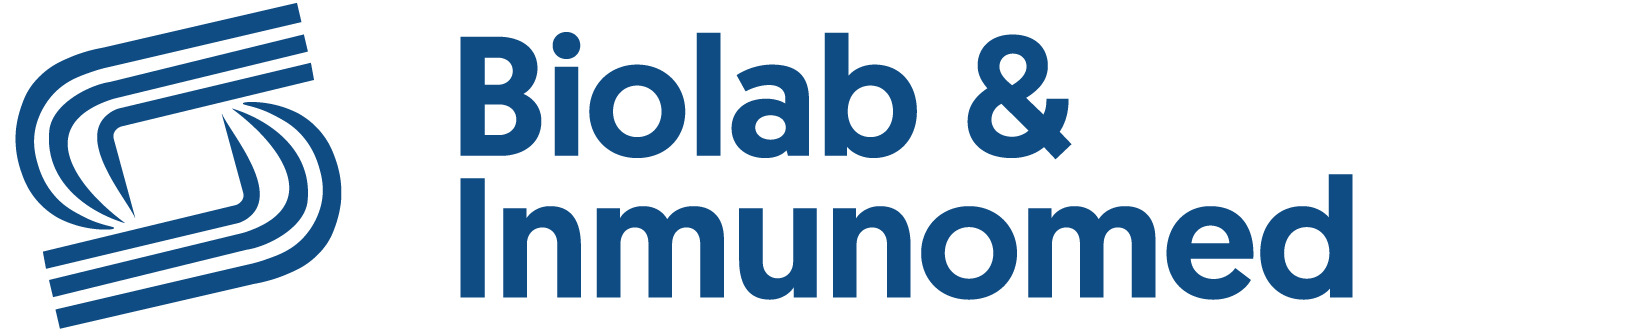 Logo Biolab & Inmunomed